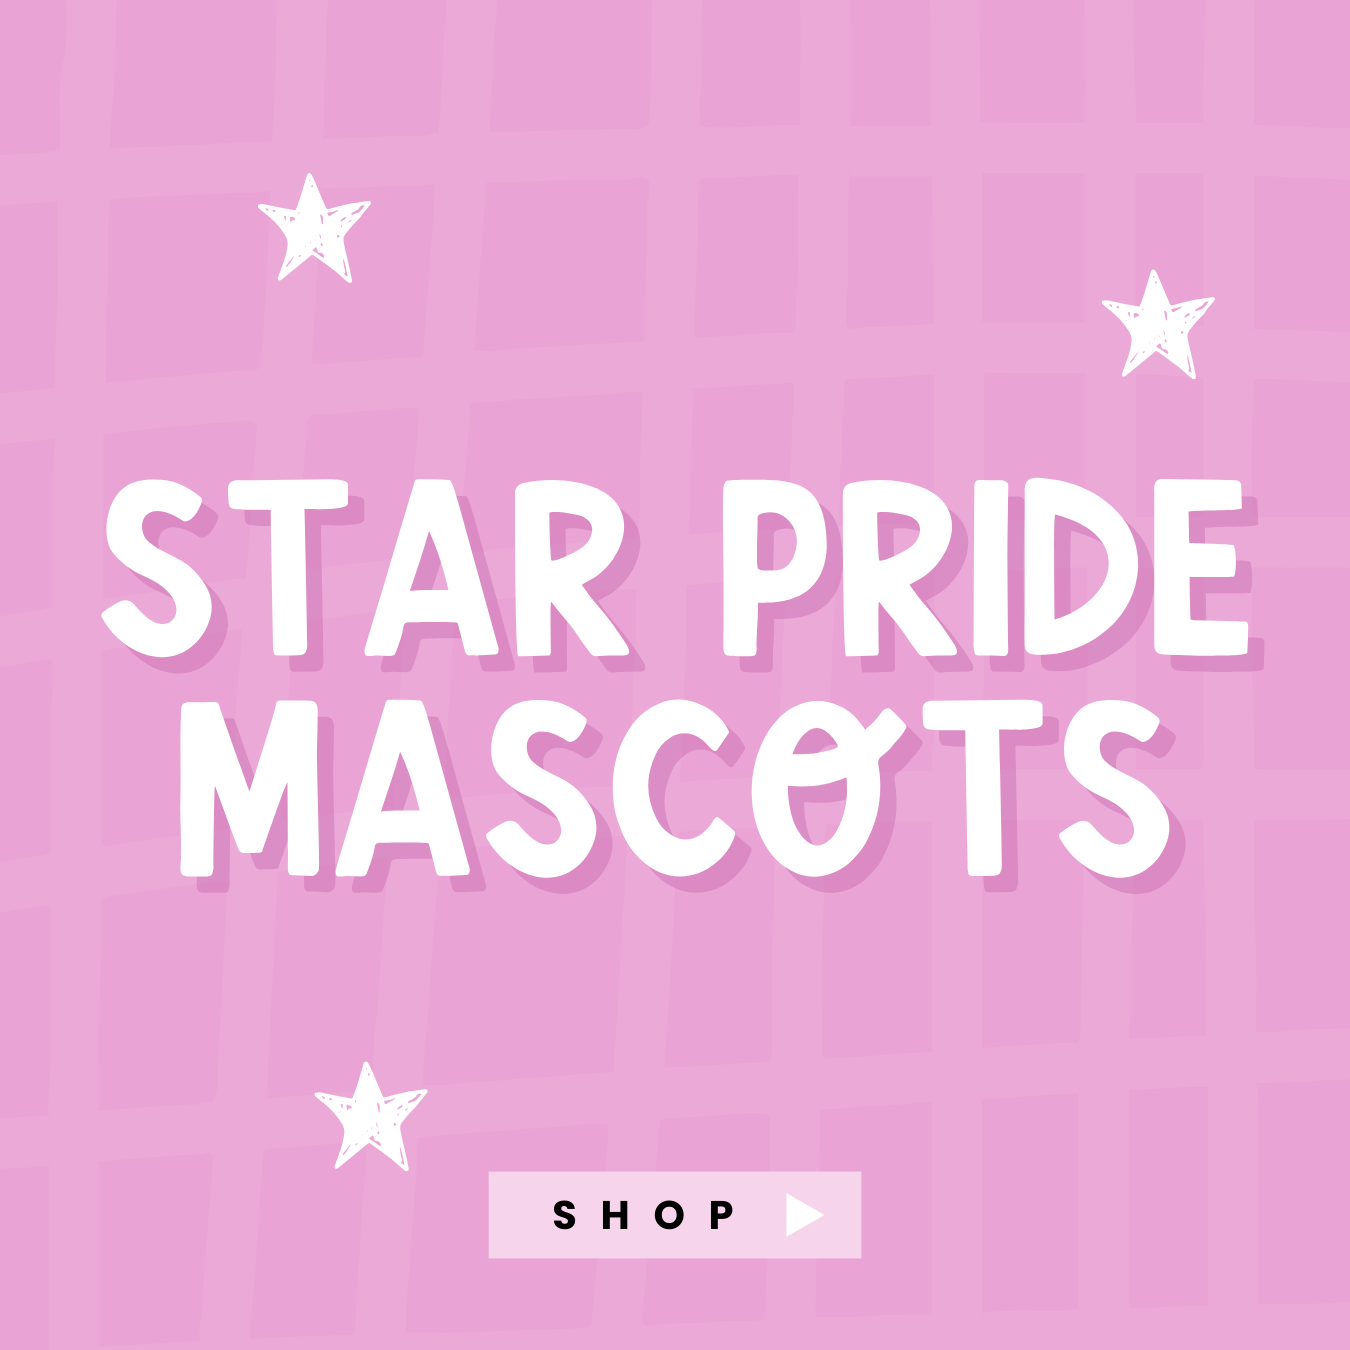 Star Pride Mascots